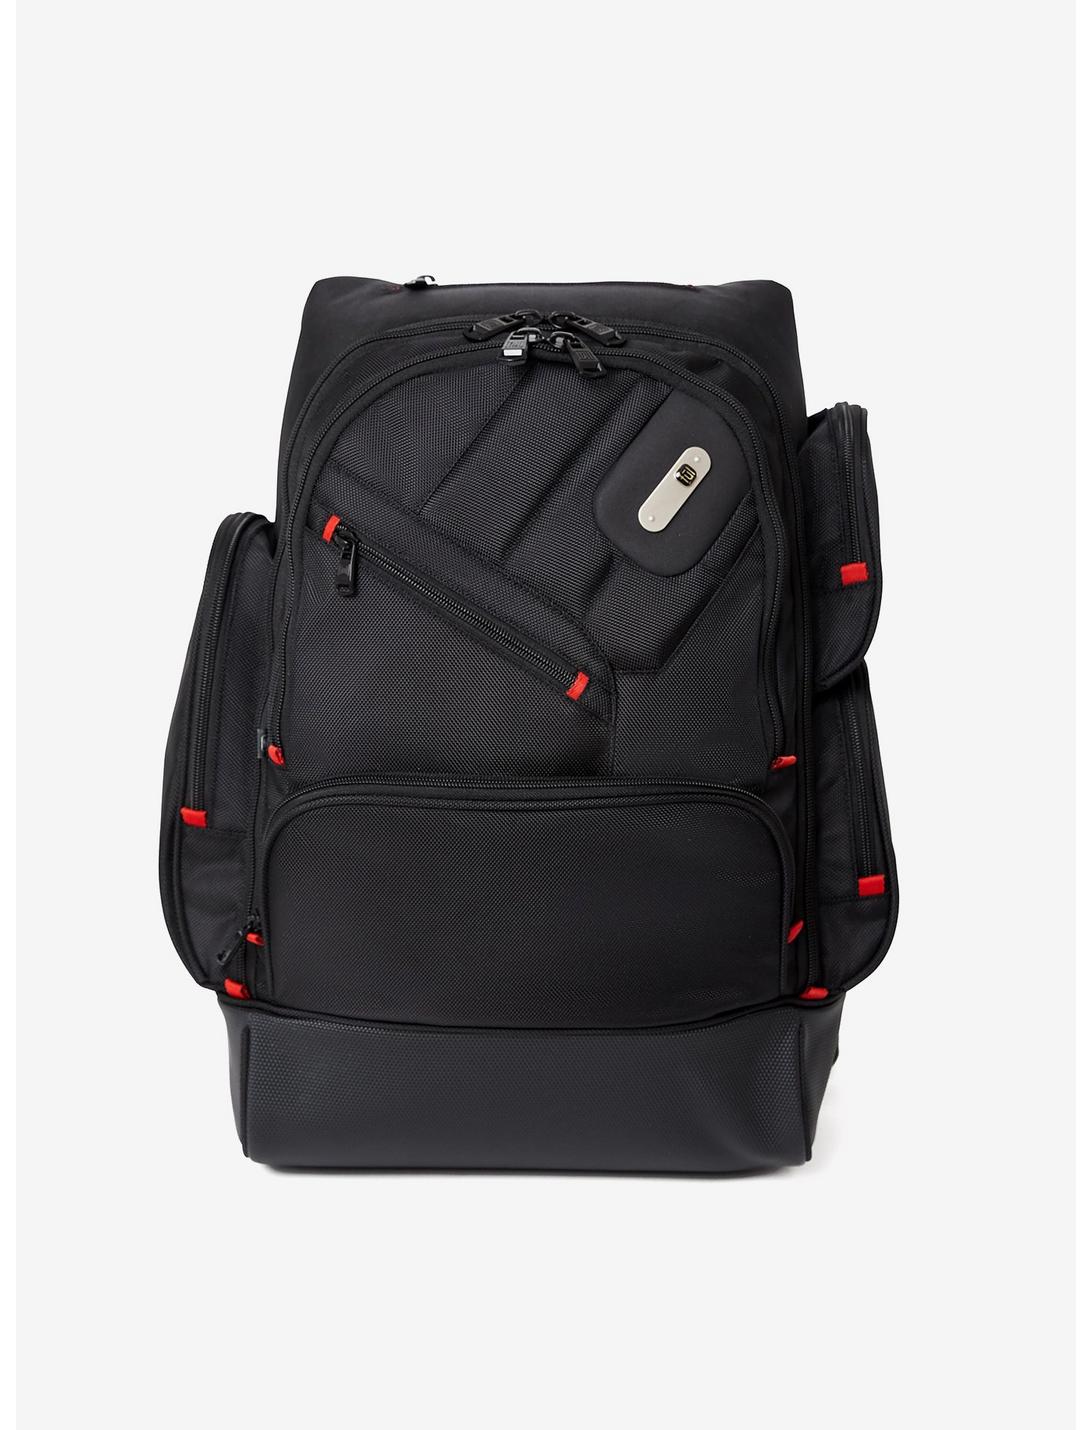 FUL Refugee Black Laptop Backpack, , hi-res